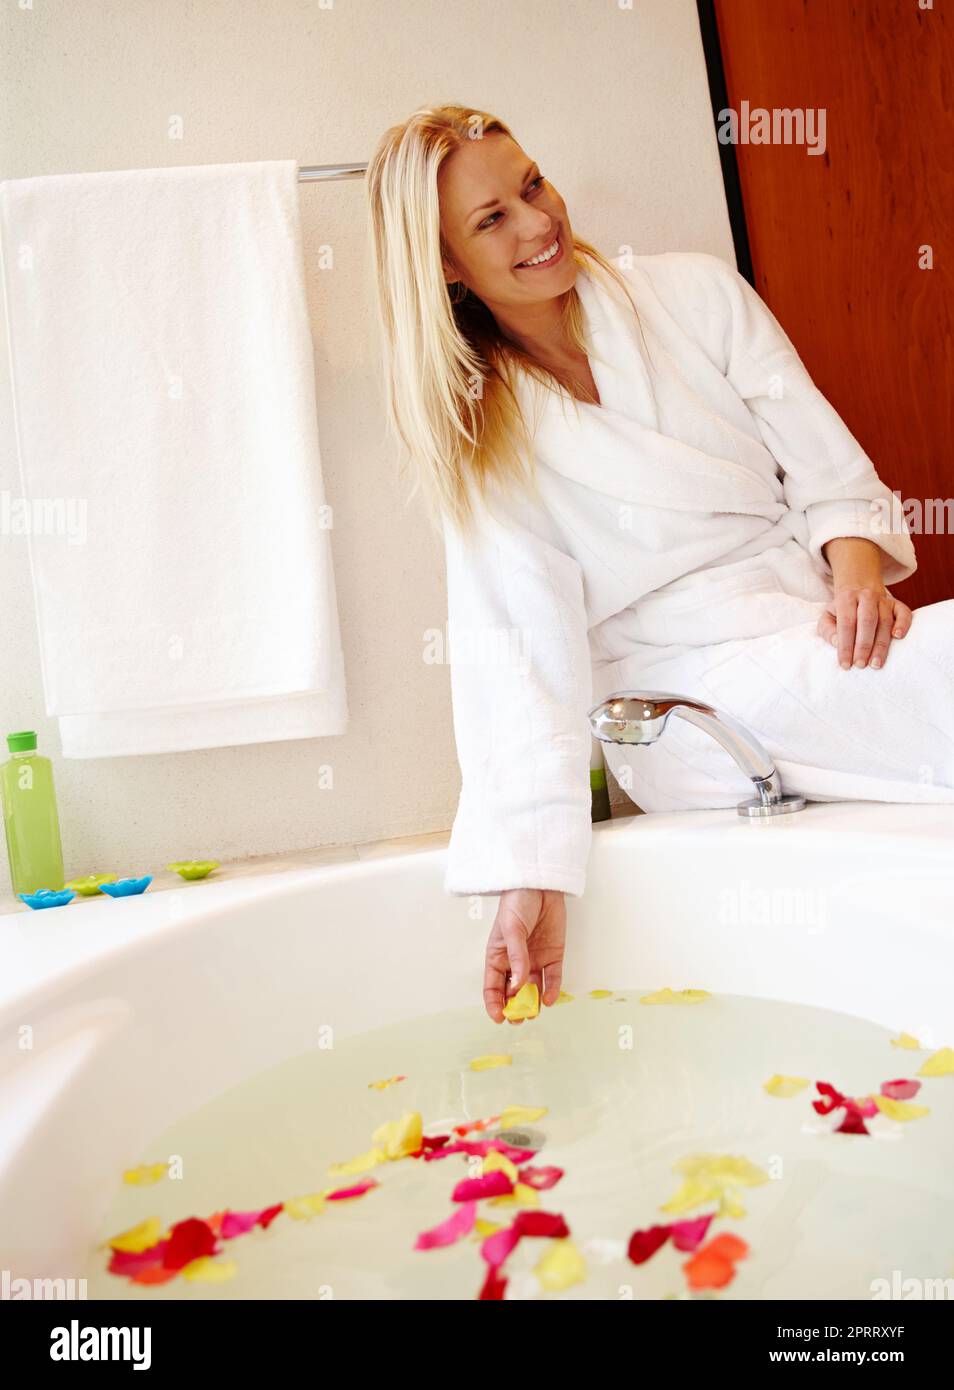 Faites de votre maison un spa. Une belle jeune femme assise sur le bord d'un bain luxueux rempli de pétales Banque D'Images